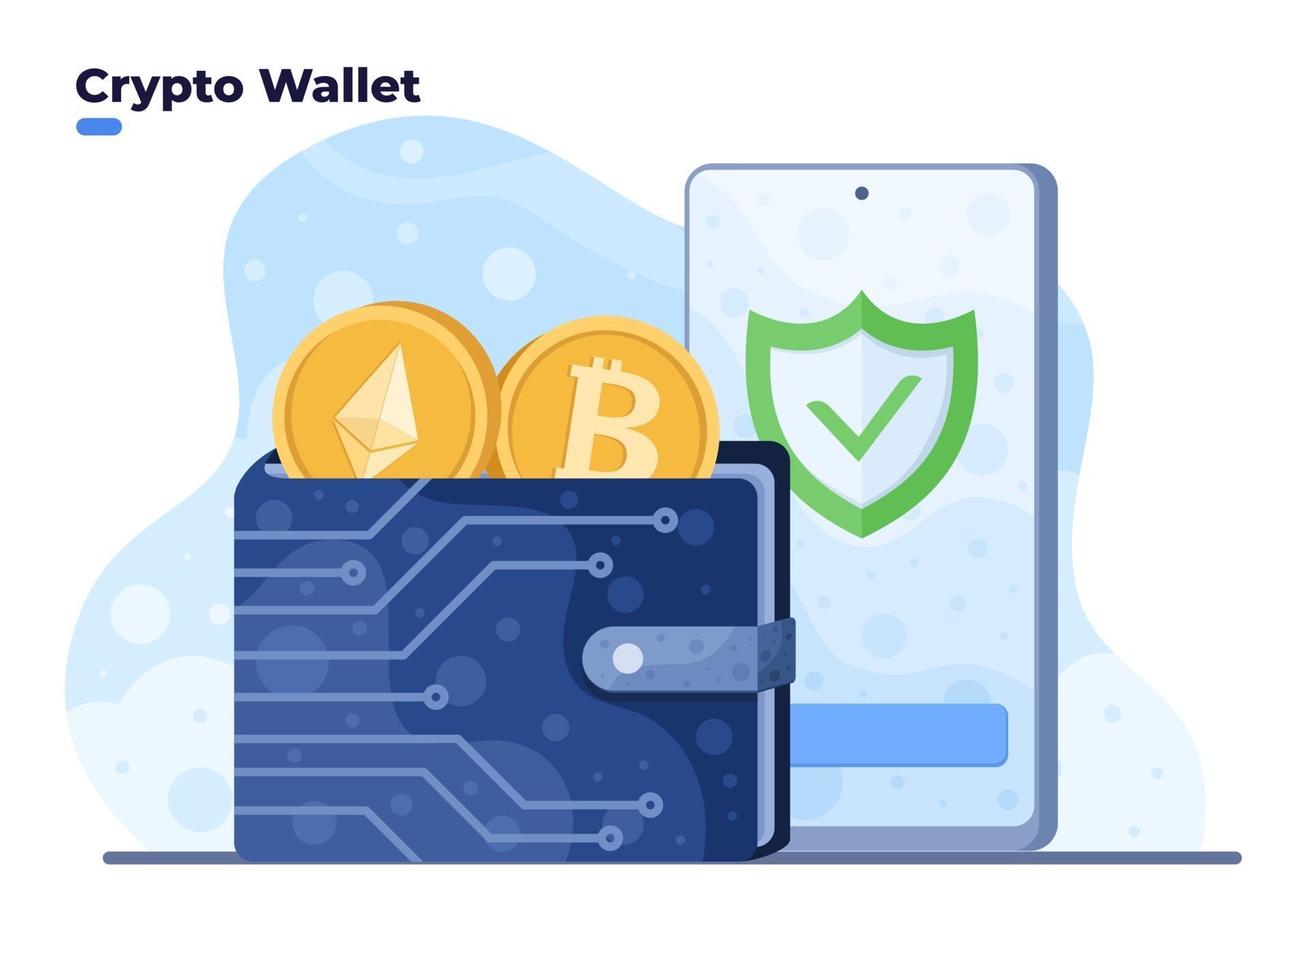 Krypto-Geldbörsen-Vektor-Illustration mit mobilem Smartphone. Digitale Wallet-Technologie für Kryptowährung Bitcoin. Geldbörse mit Handy verbunden. vektor